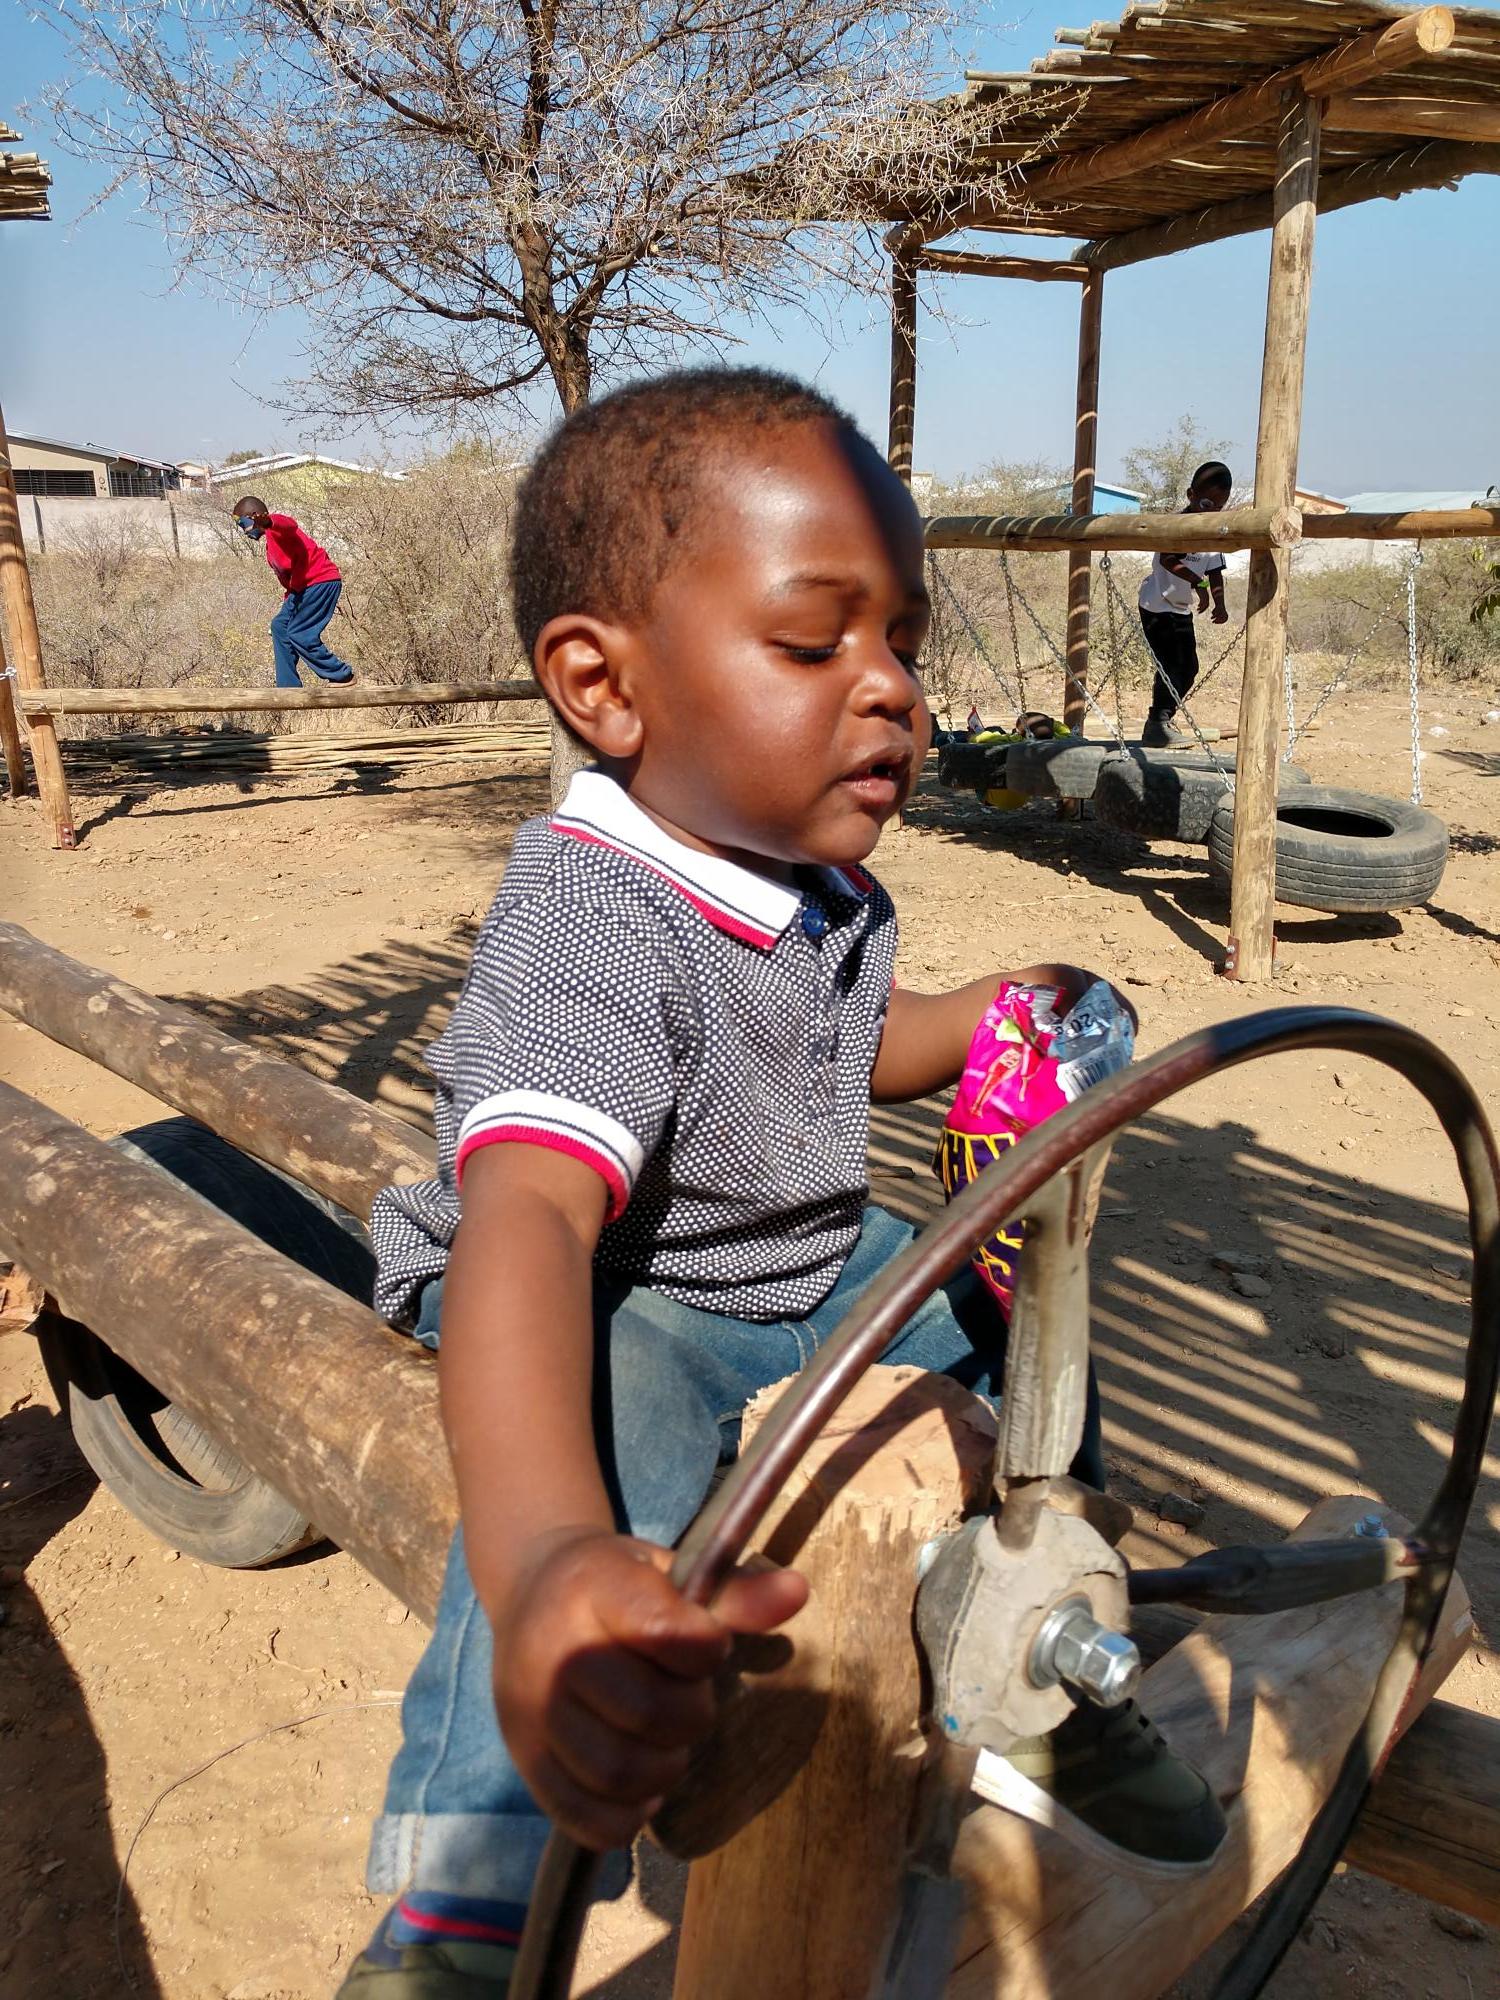 A child in Okahandja, Namibia. Courtesy photo